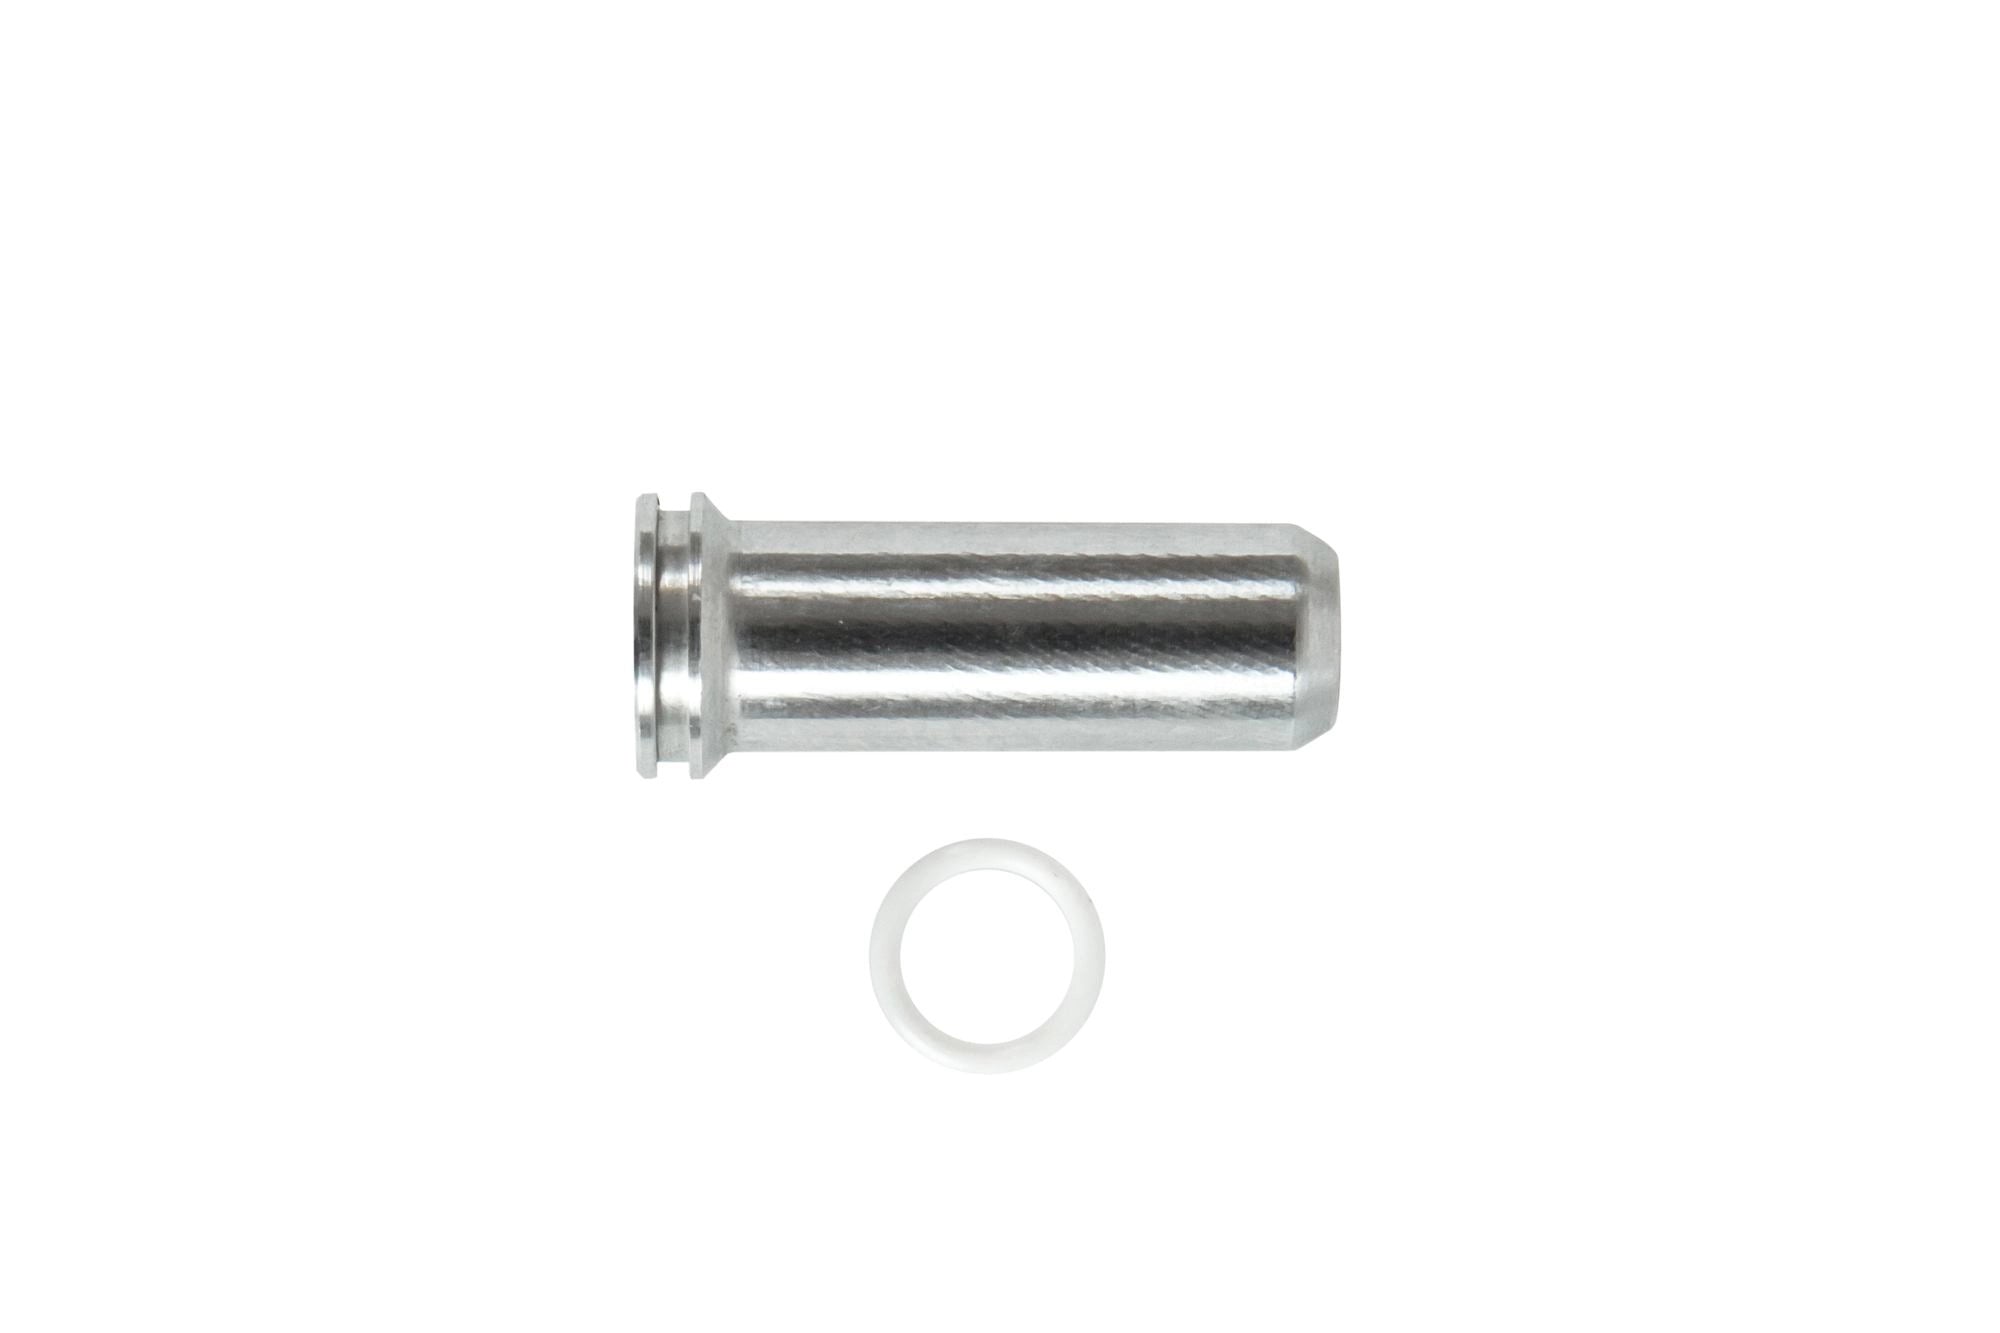 Aluminum CNC Nozzle - 19.5 mm